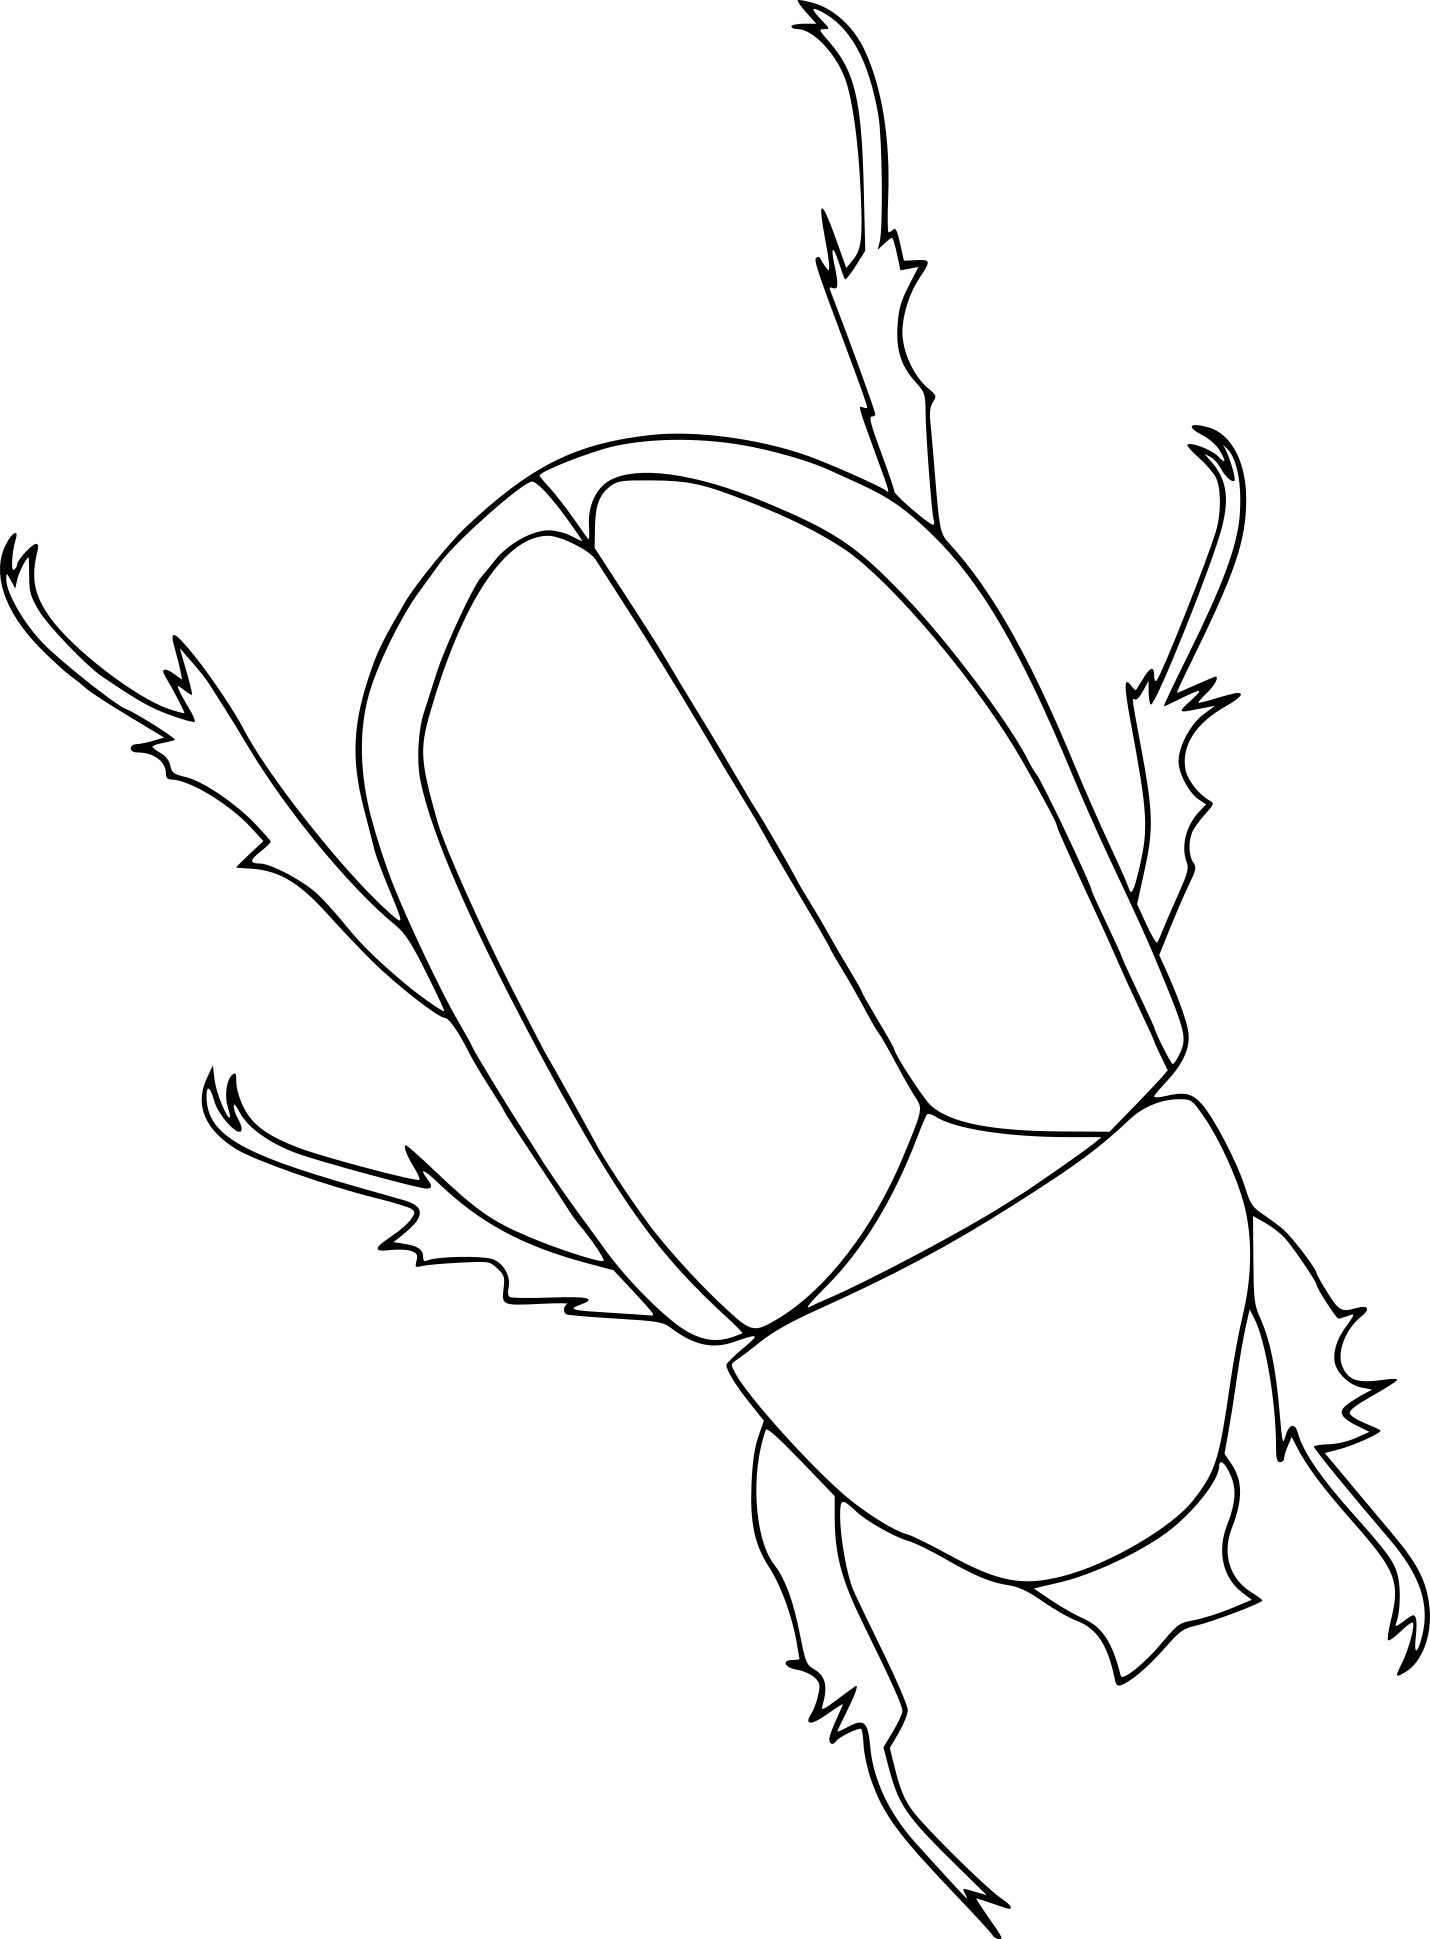 Disegno di Disegno di scarafaggi e da colorare